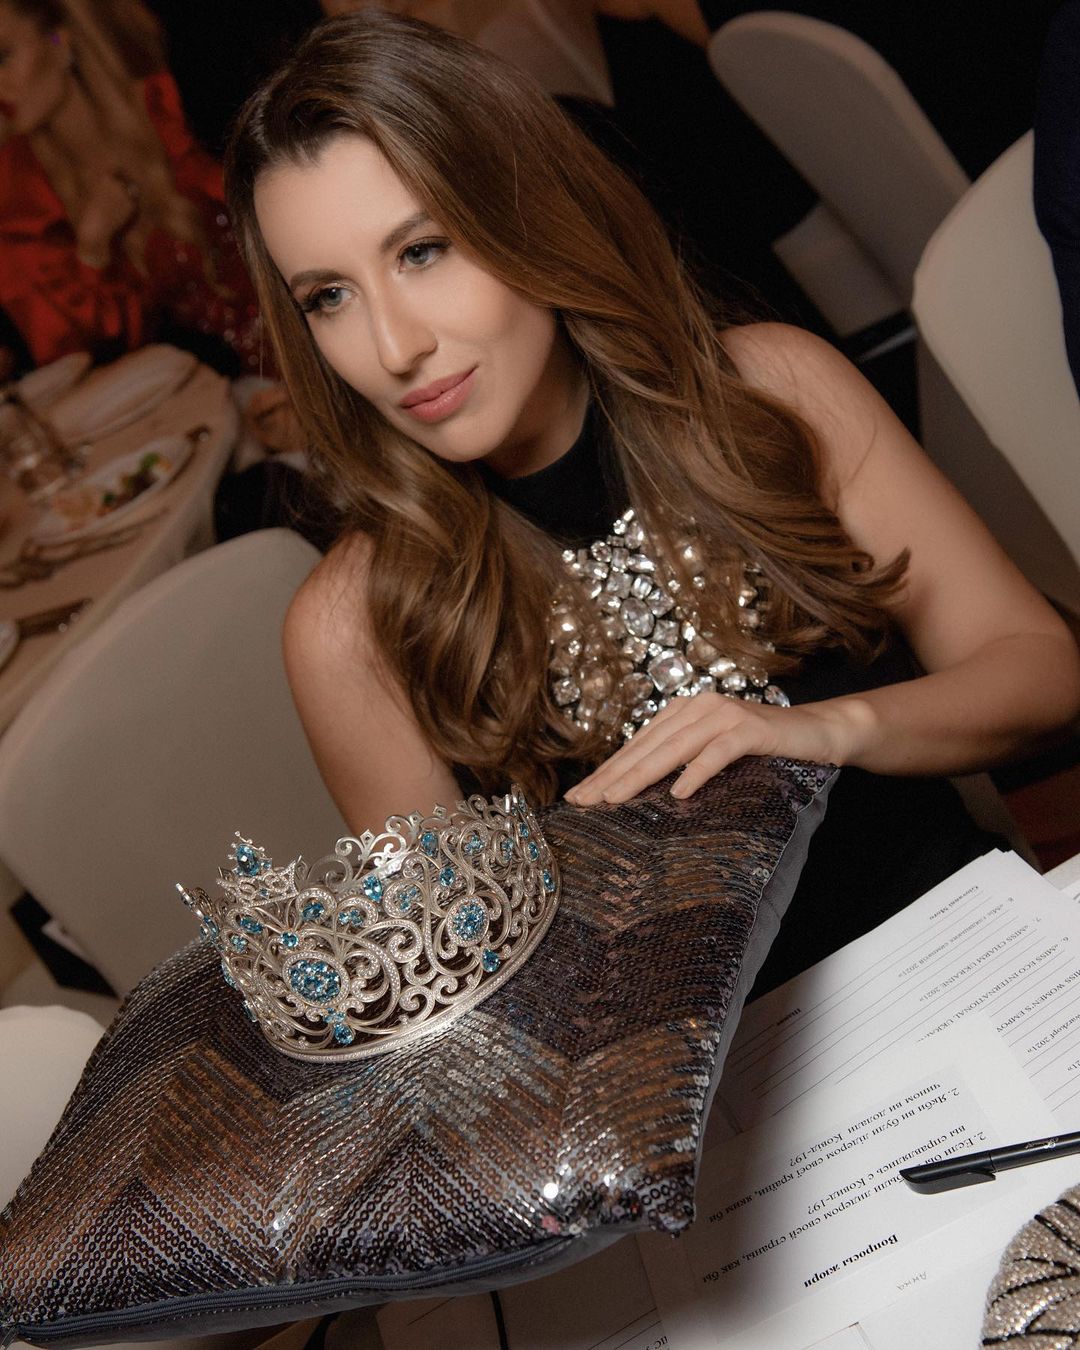 Анна Філімонова вважає, що у зв'язку з новими правилами конкуренція на «Міс Україна Всесвіт» буде дуже великою. Фото: Instagram.com/anna.filimonova__/